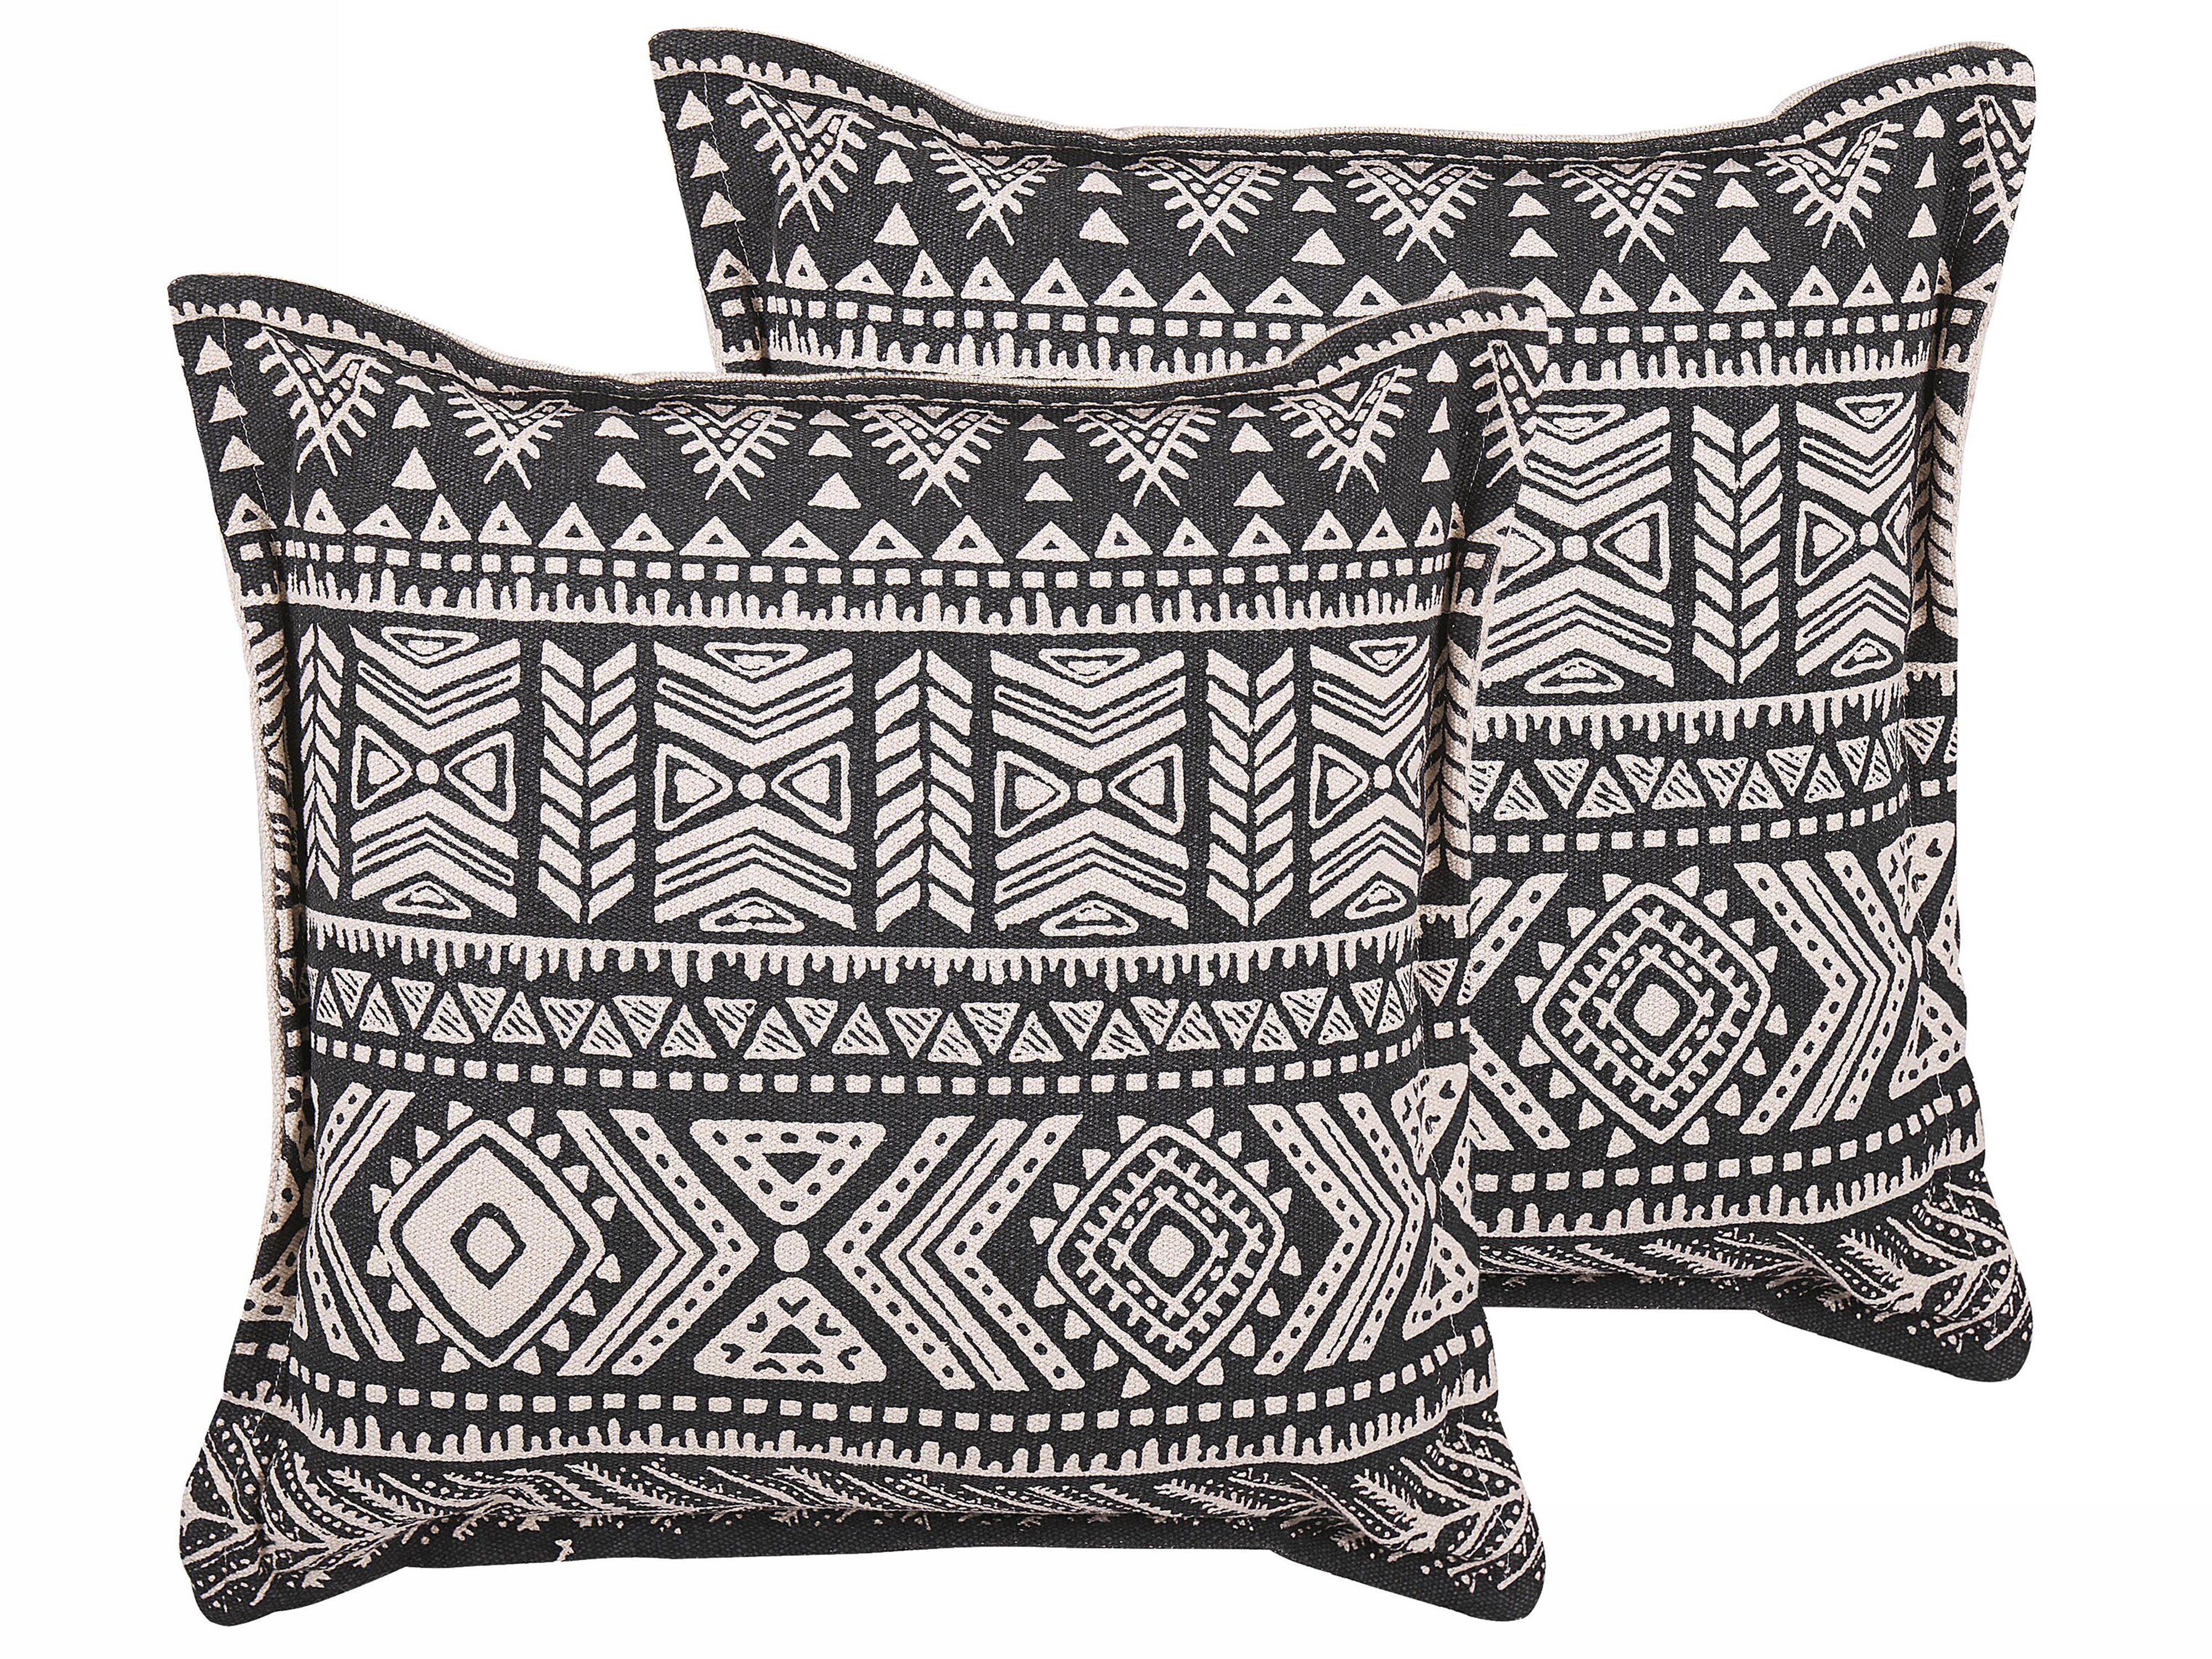 Cuscino quadrato in cotone 45x45 cm - Articoli tessili decorativi - Tikamoon